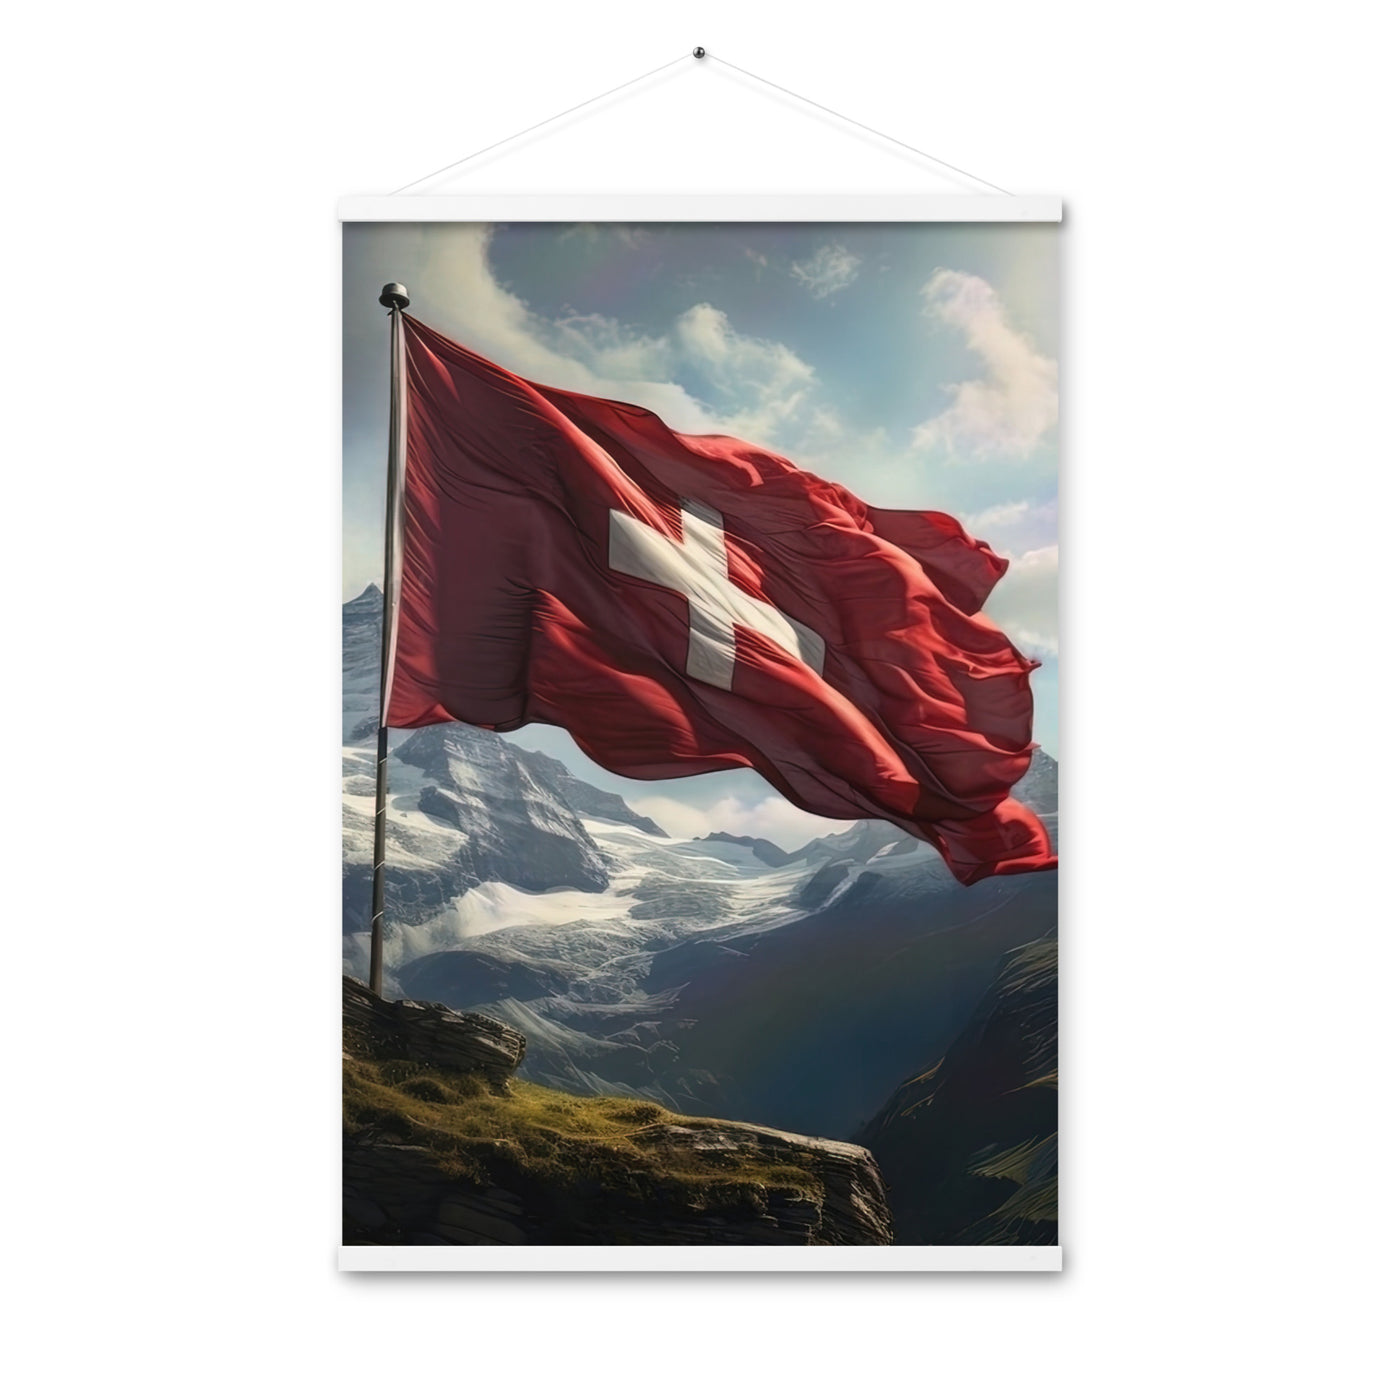 Schweizer Flagge und Berge im Hintergrund - Fotorealistische Malerei - Premium Poster mit Aufhängung berge xxx 61 x 91.4 cm